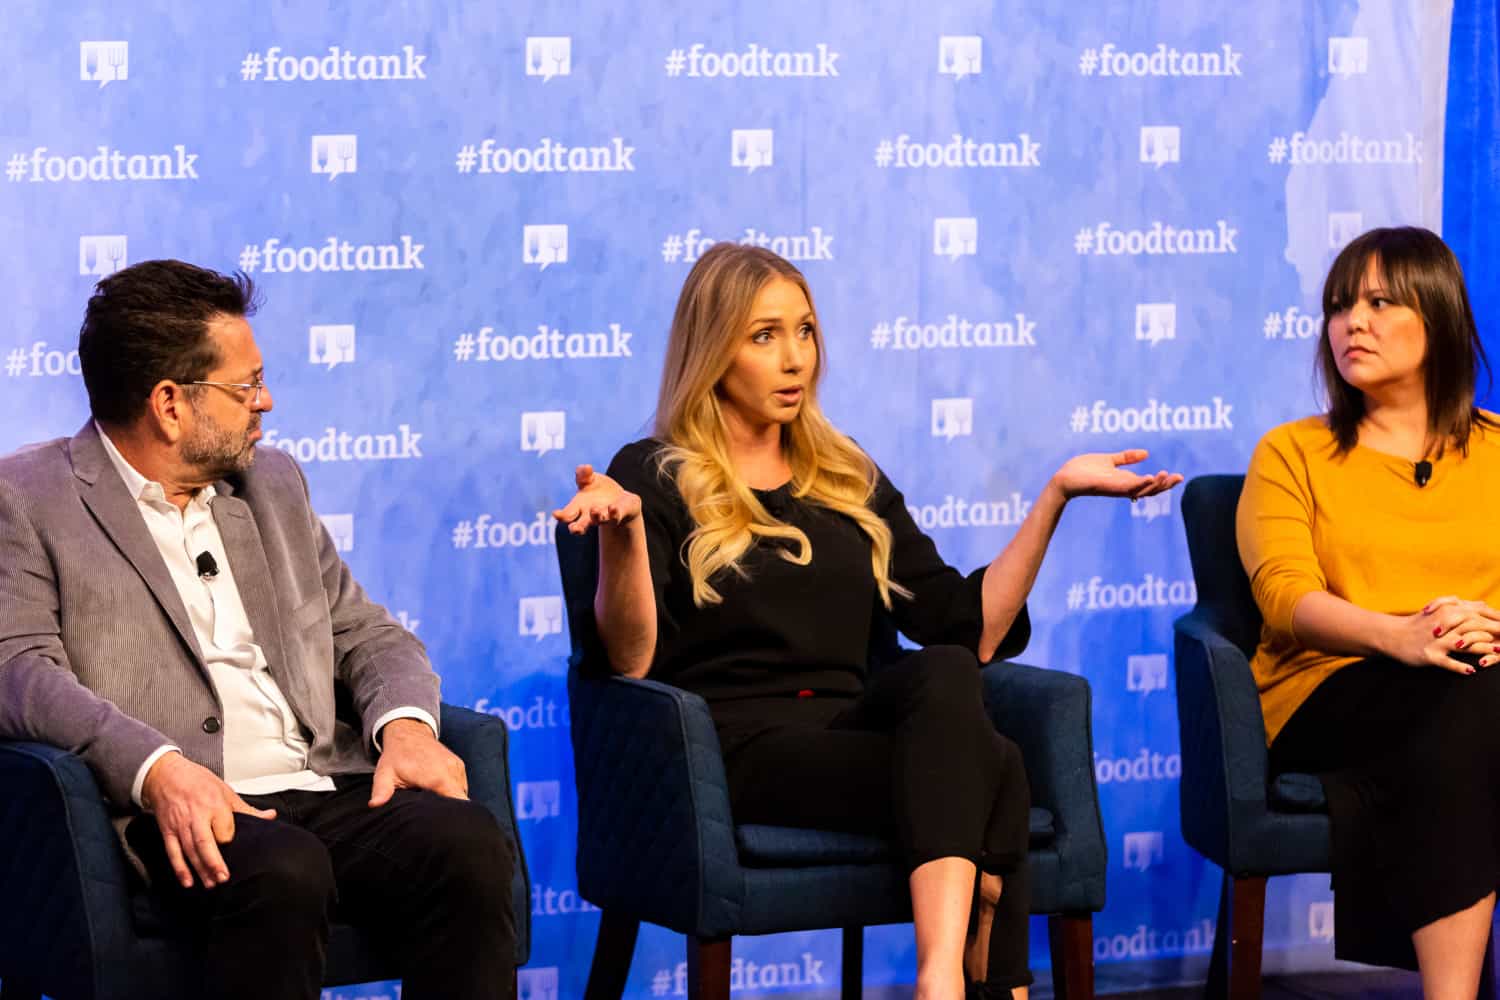 在圣地亚哥食品罐峰会,食品记者小组w88优德老虎机平台讨论故事对于我们的食物系统的变革潜力。